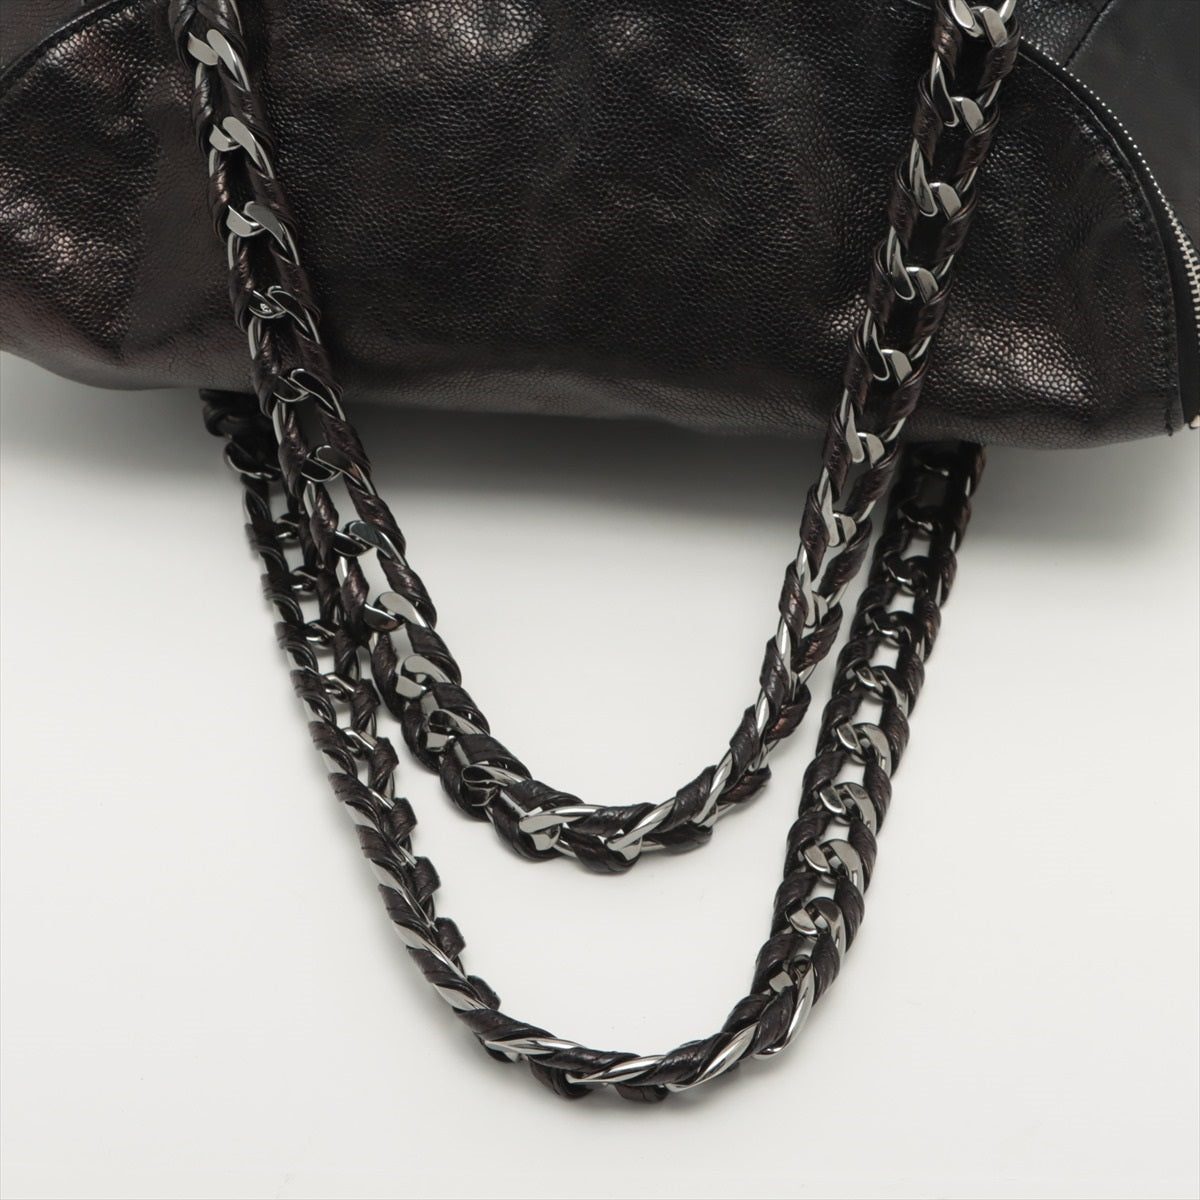 Chanel Coco Caviar S Tote Bag Black Silver G  11th